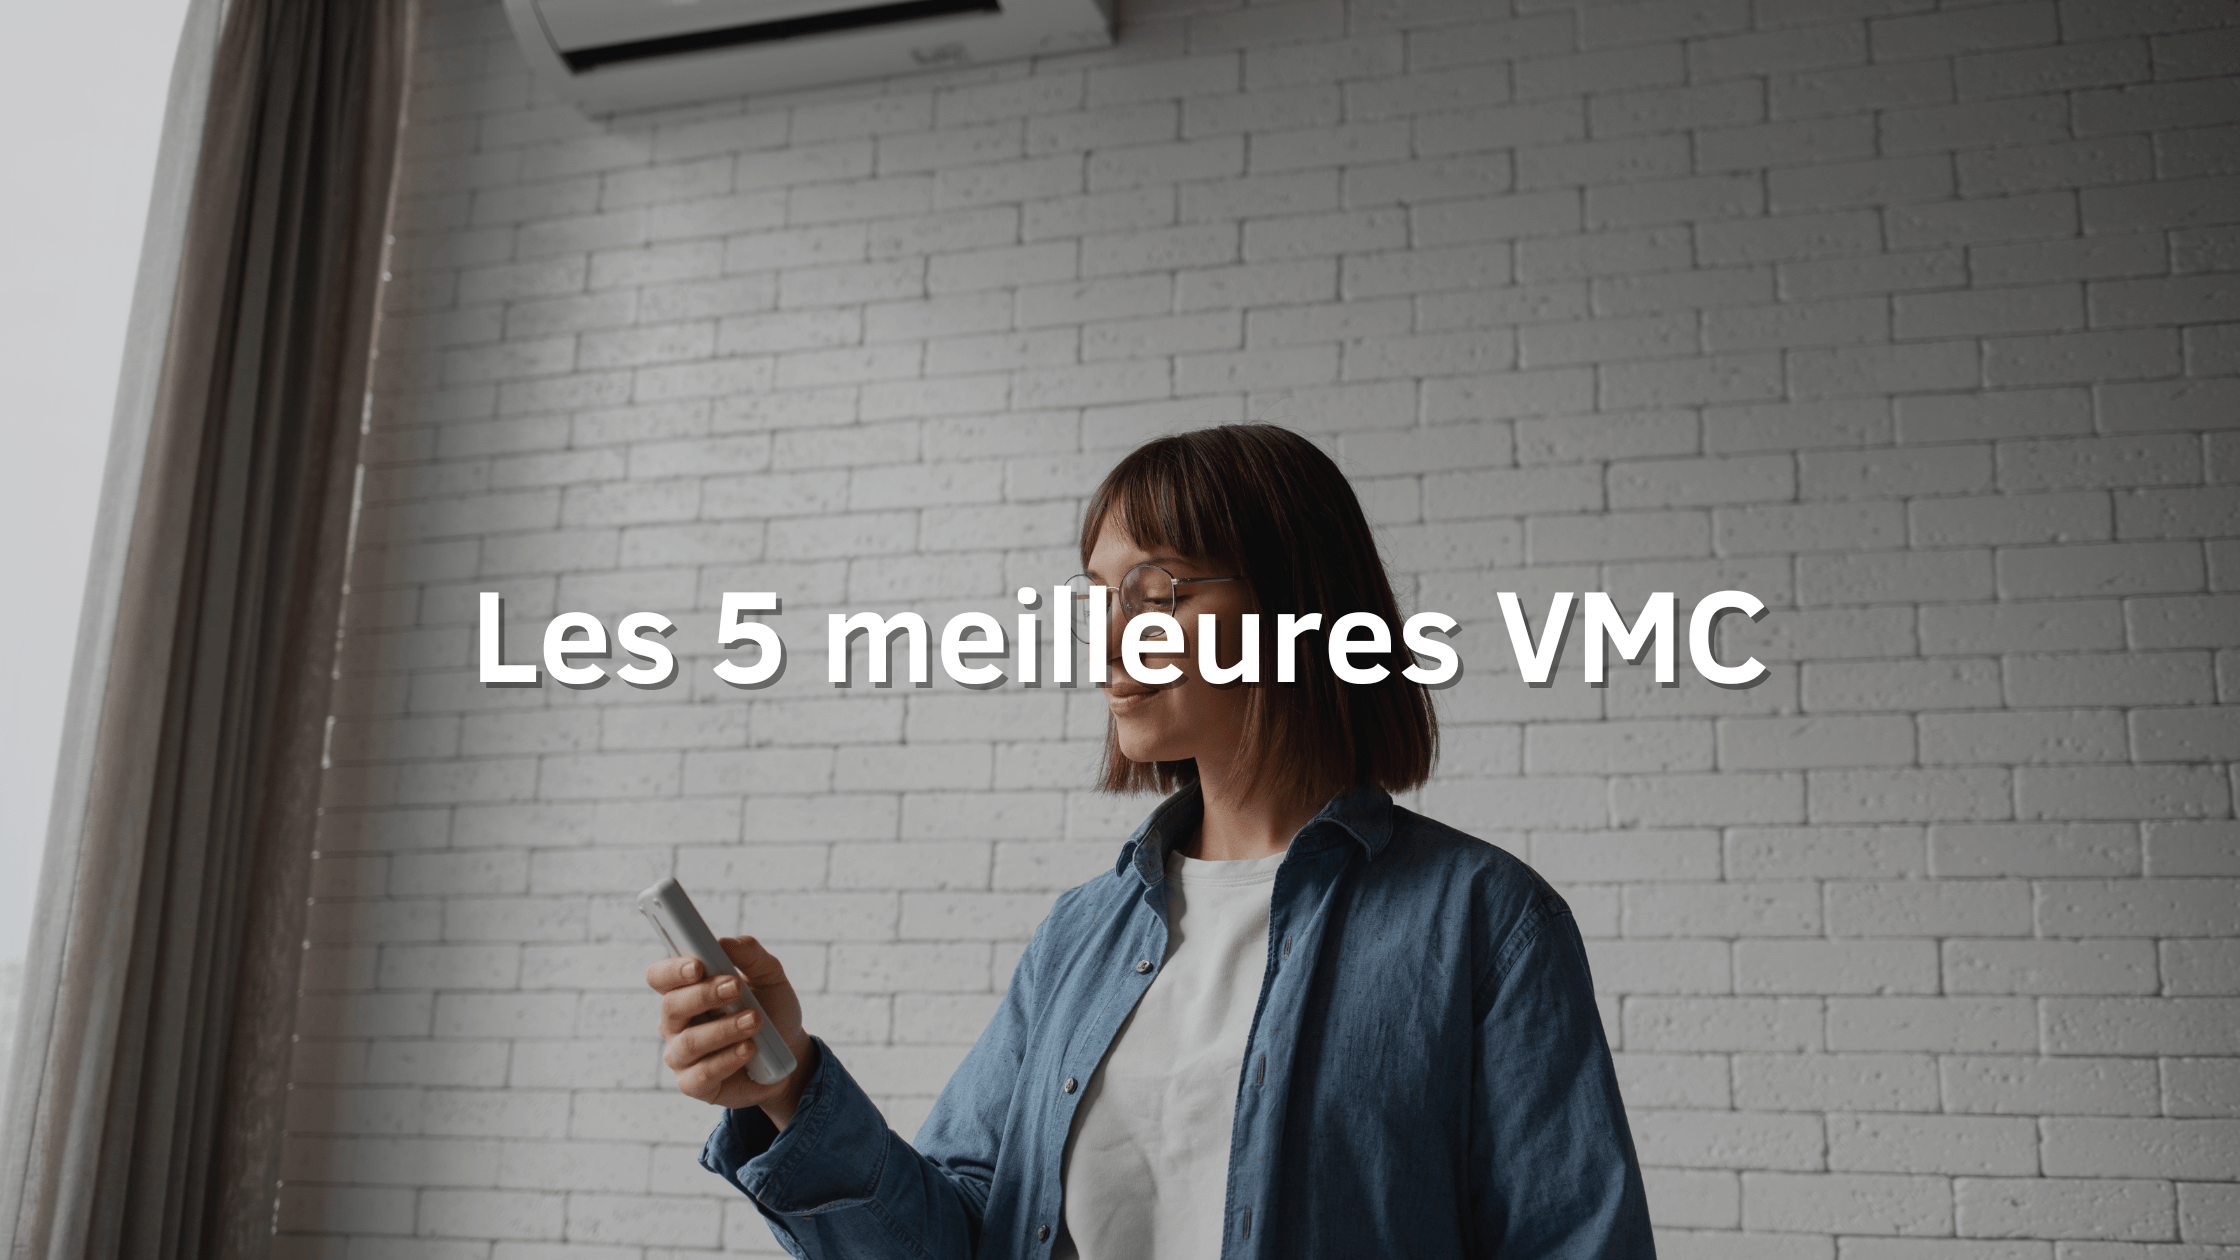 5 meilleres VMC